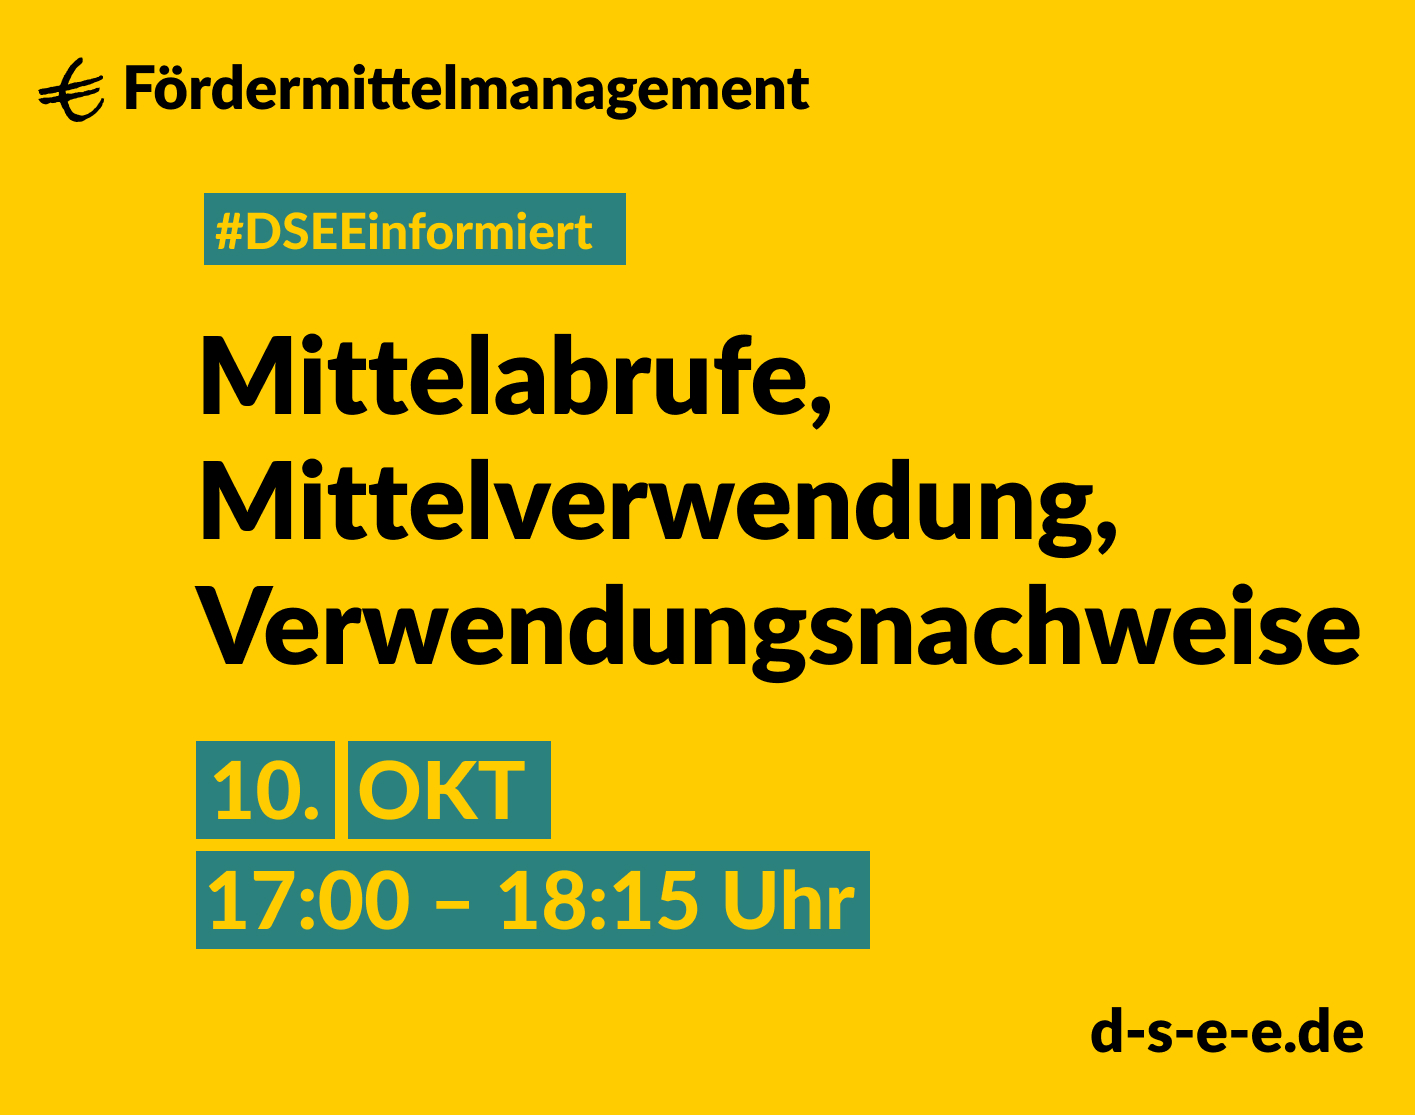 Grafik mit gelbem Hintergrund. Text: Fördermittelmanagement. #DSEEinformiert: Mittelabrufe, Mittelverwendung, Verwendungsnachweise. 10. Okt., 17:00-18:15 Uhr. d-s-e-e.de